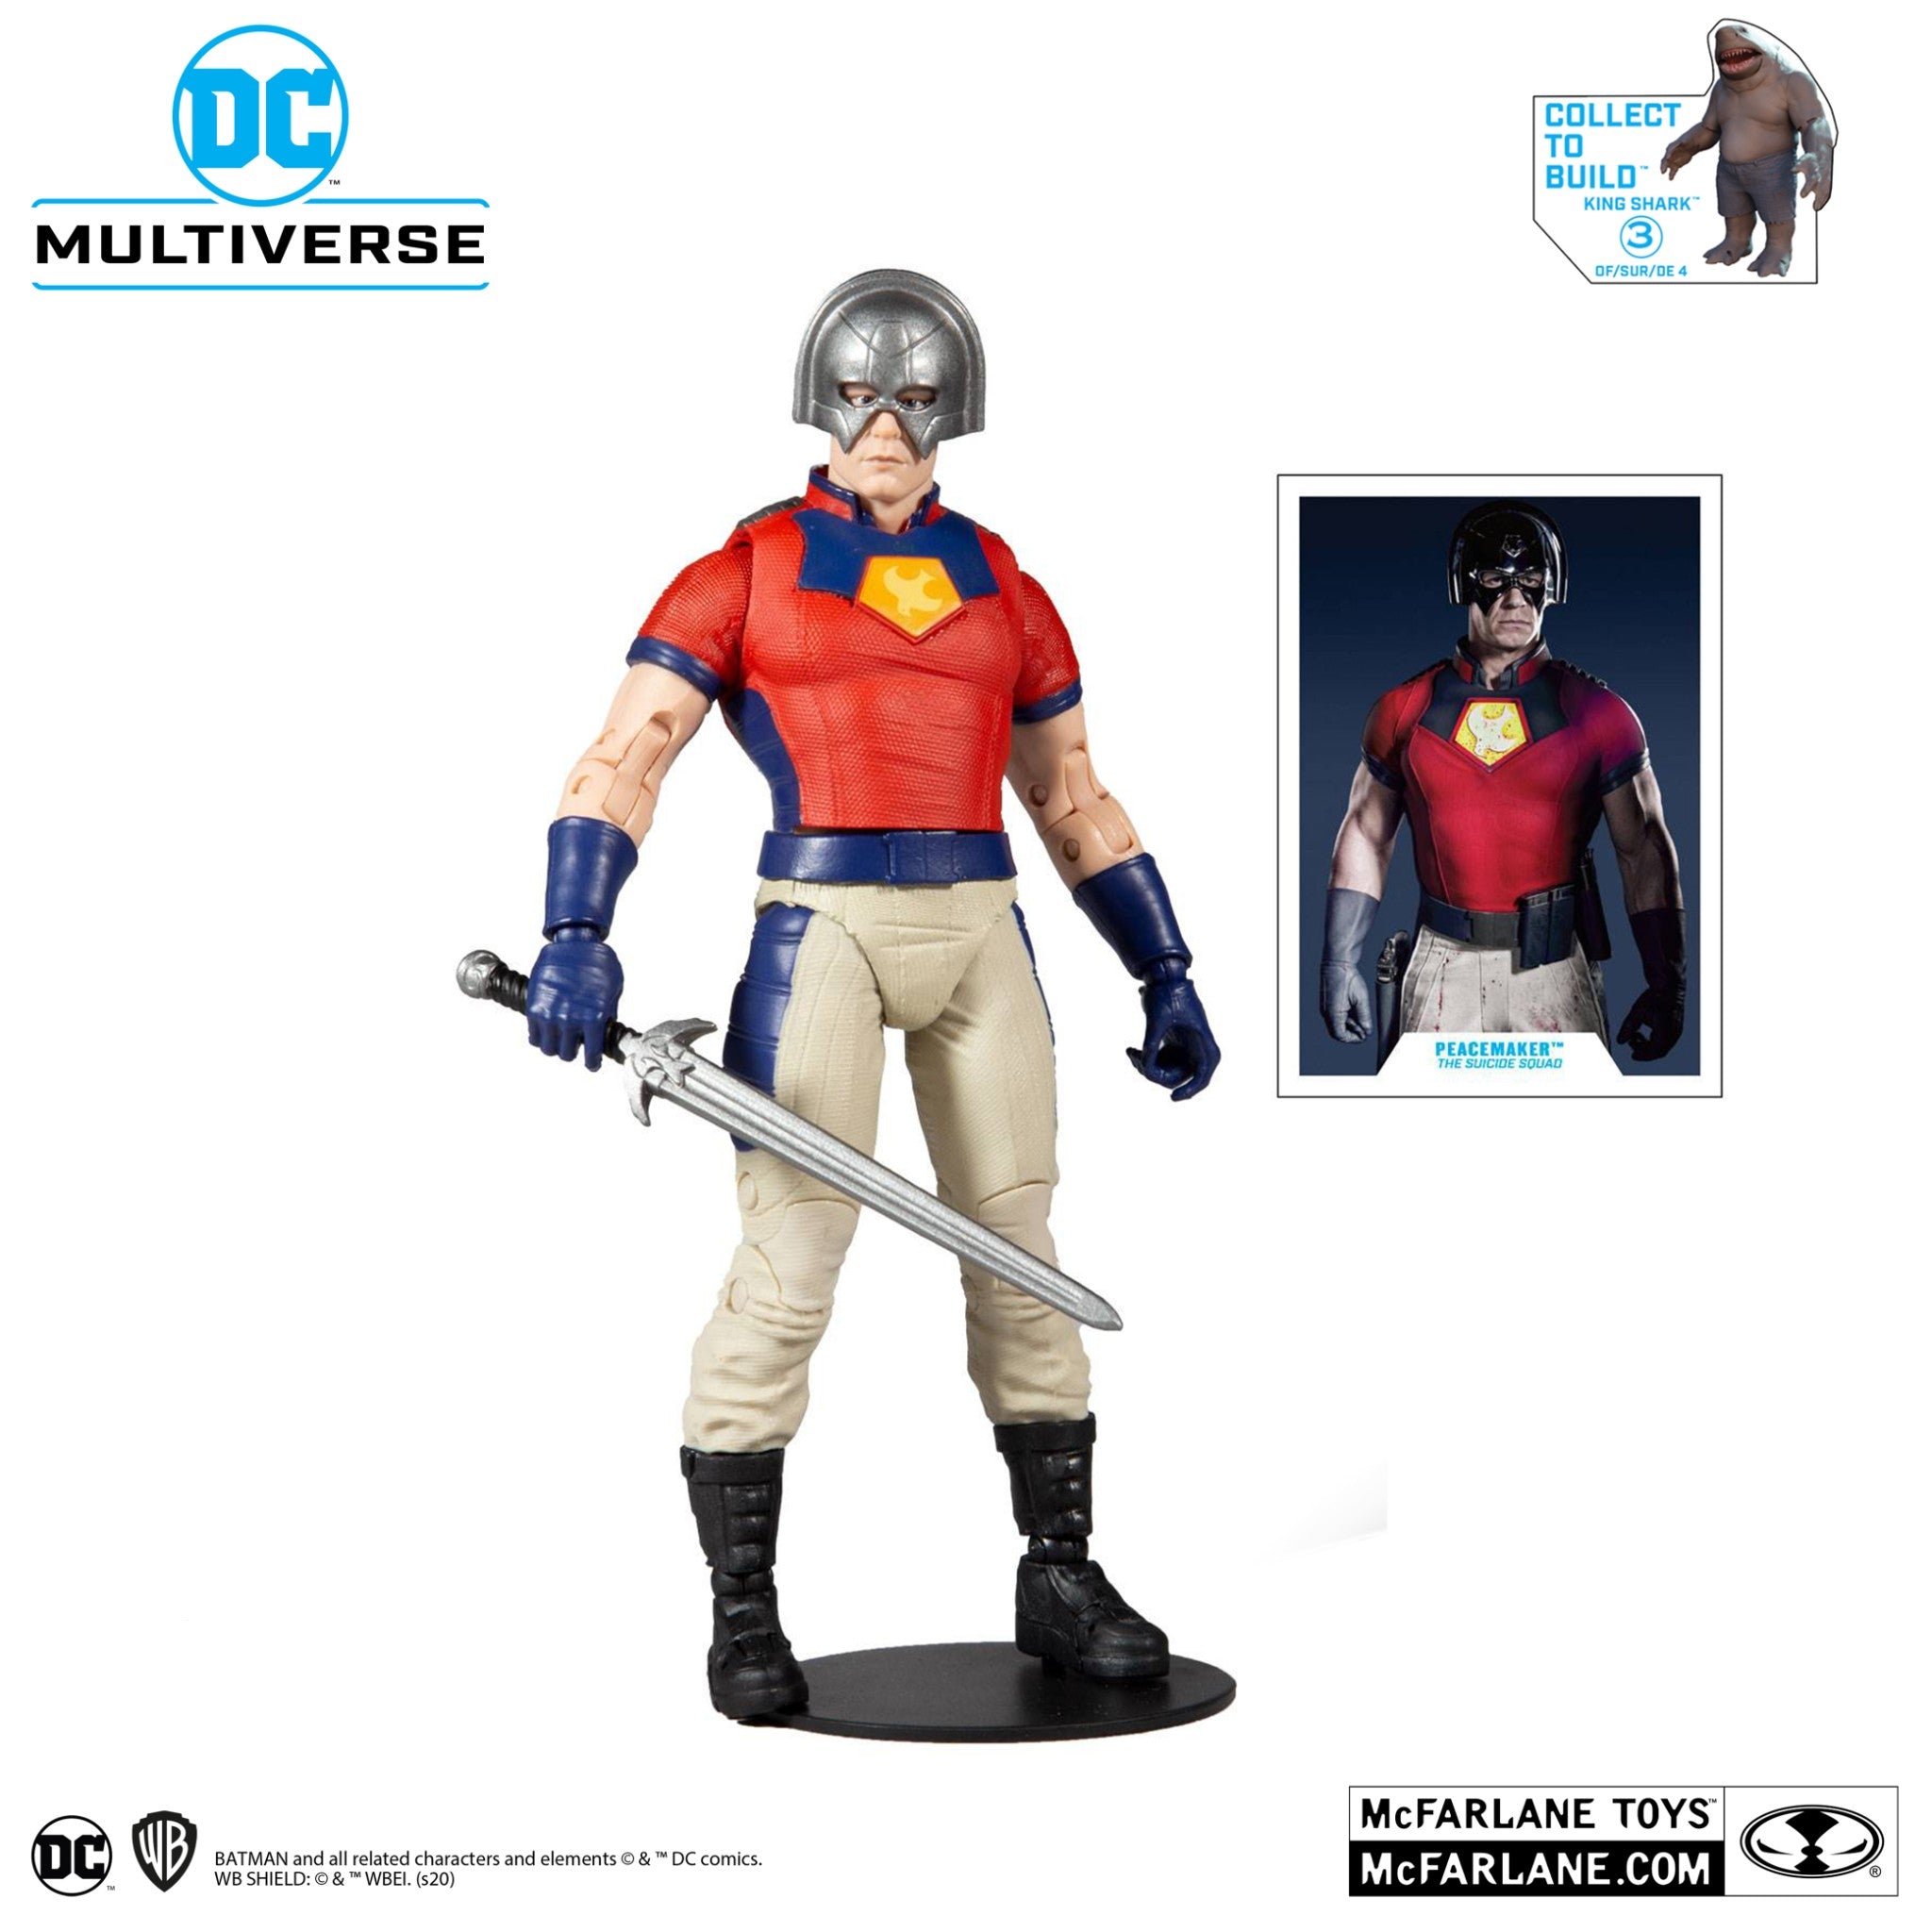 DC Multiverse Suicide Squad Peacemaker BAF King Shark - McFarlane Toys